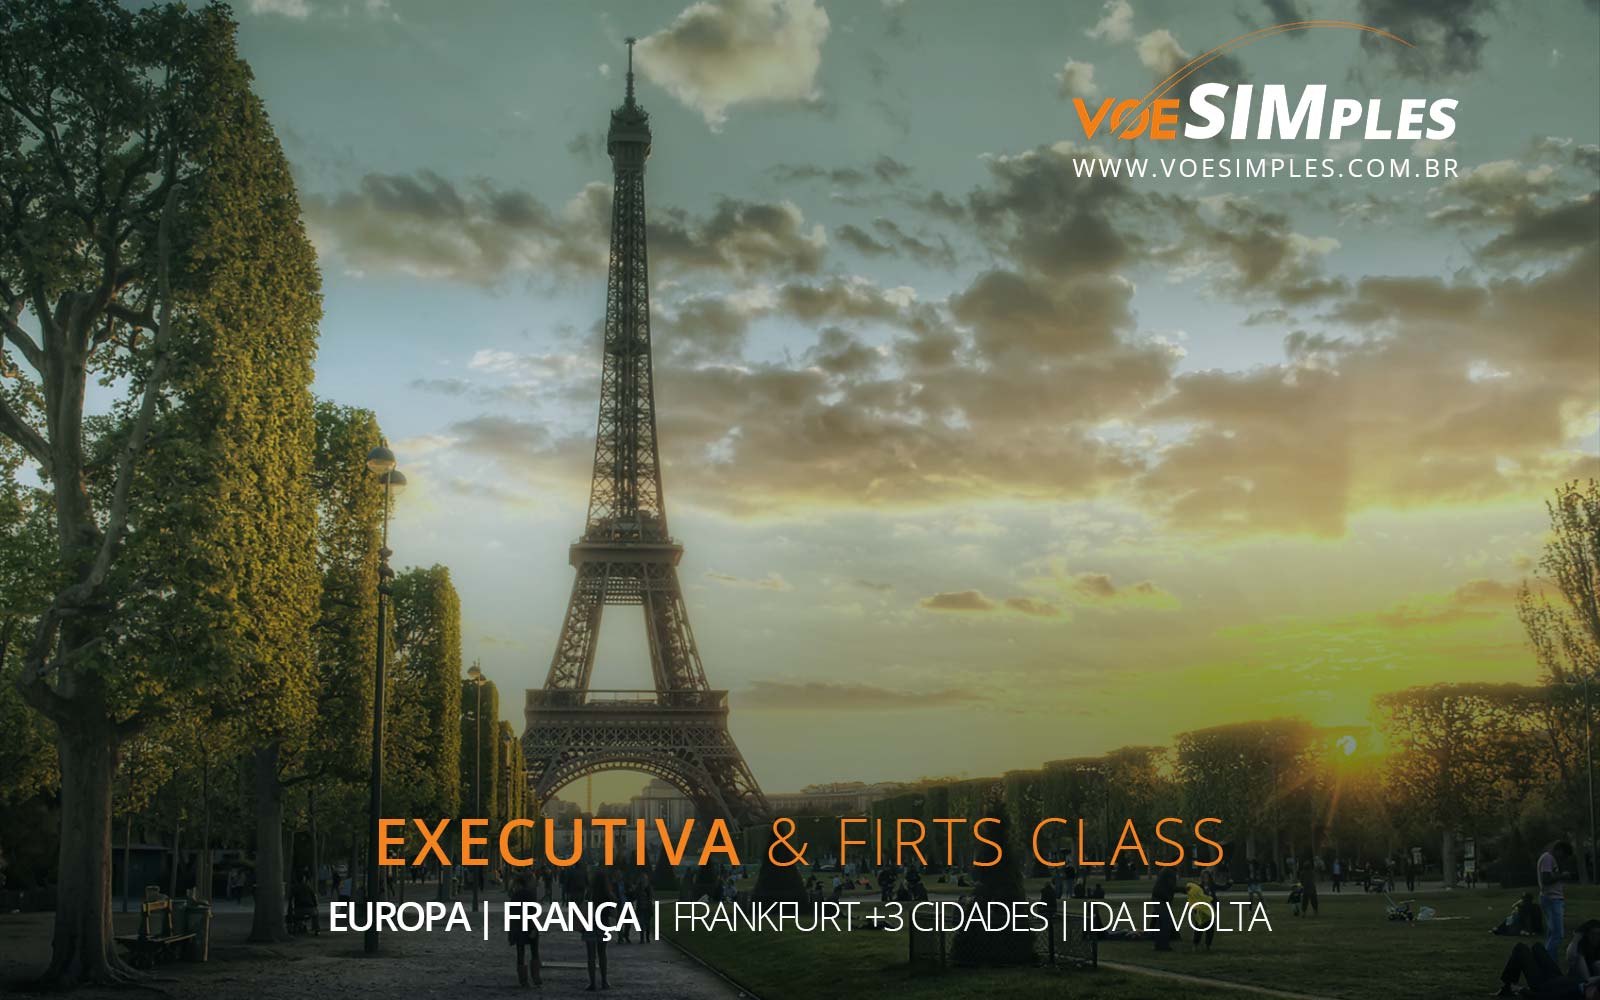 Passagens aéreas na Classe Executiva para Frankfurt, Paris, Londres, Madri e Milão na Europa